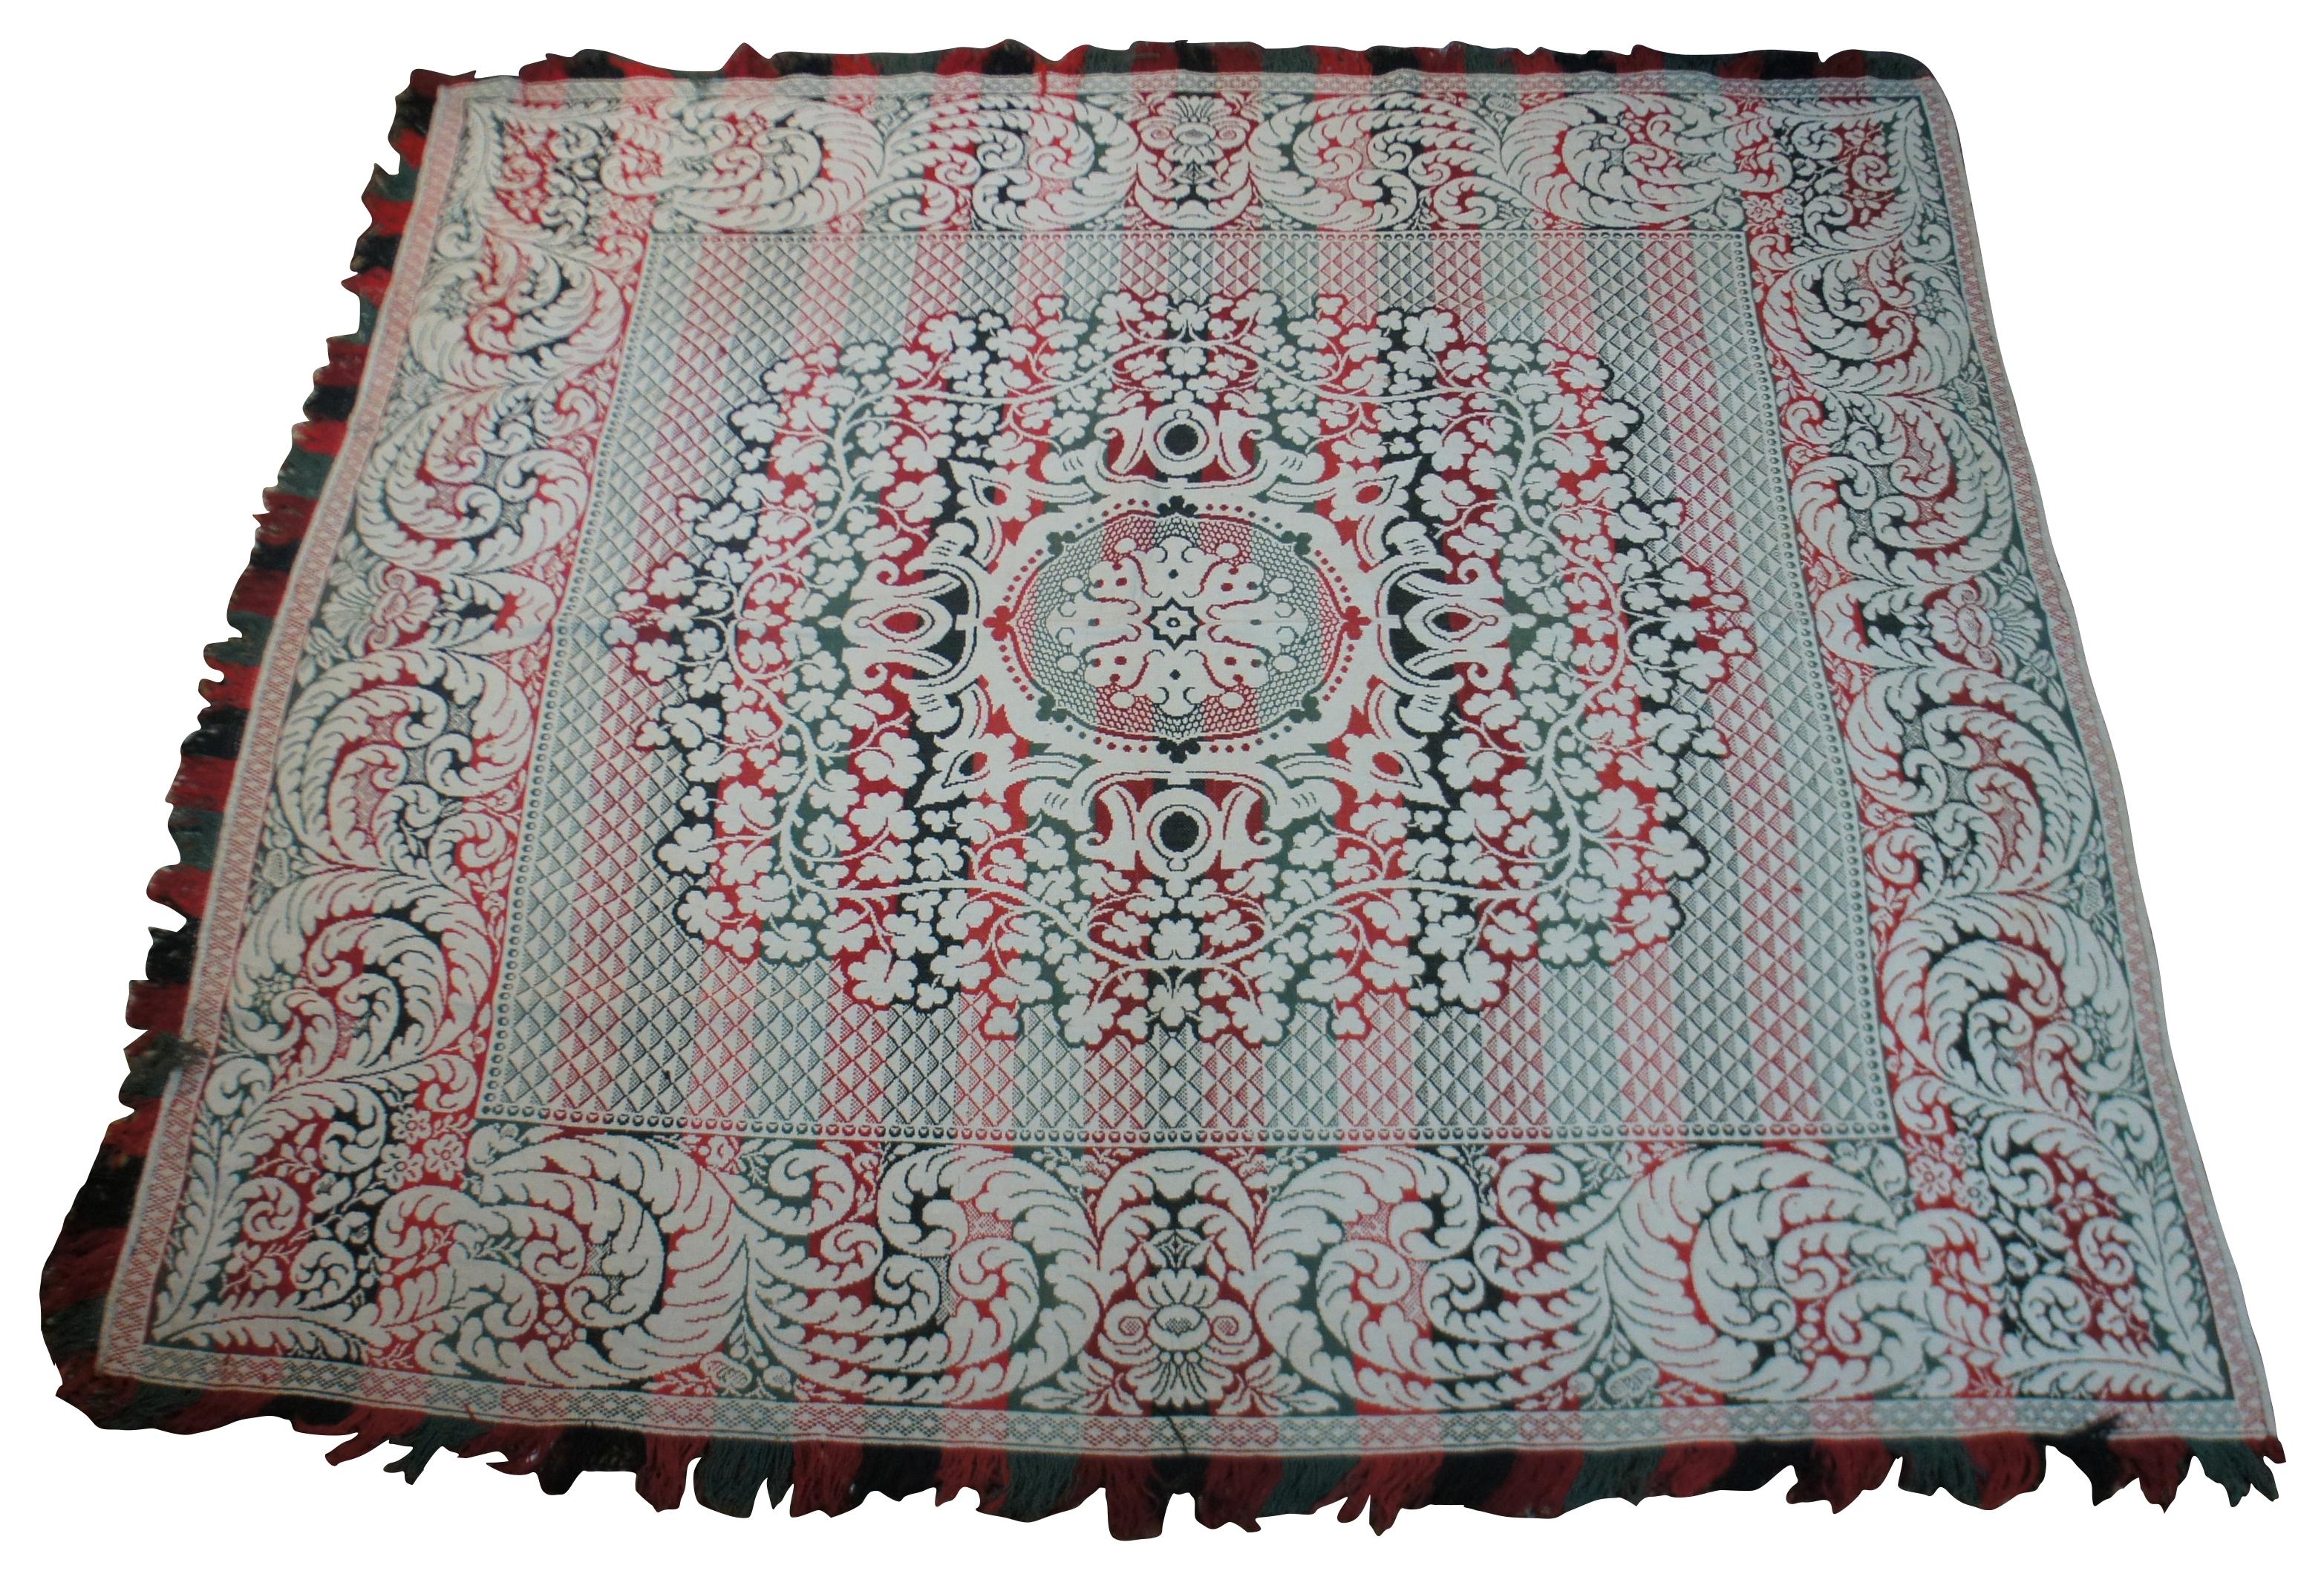 Vintage-Decke in grüner, roter und weißer Webart mit einem Muster aus wirbelnden Blättern und Blumen und dreifarbigen Fransen, die drei Seiten der Decke einfassen.